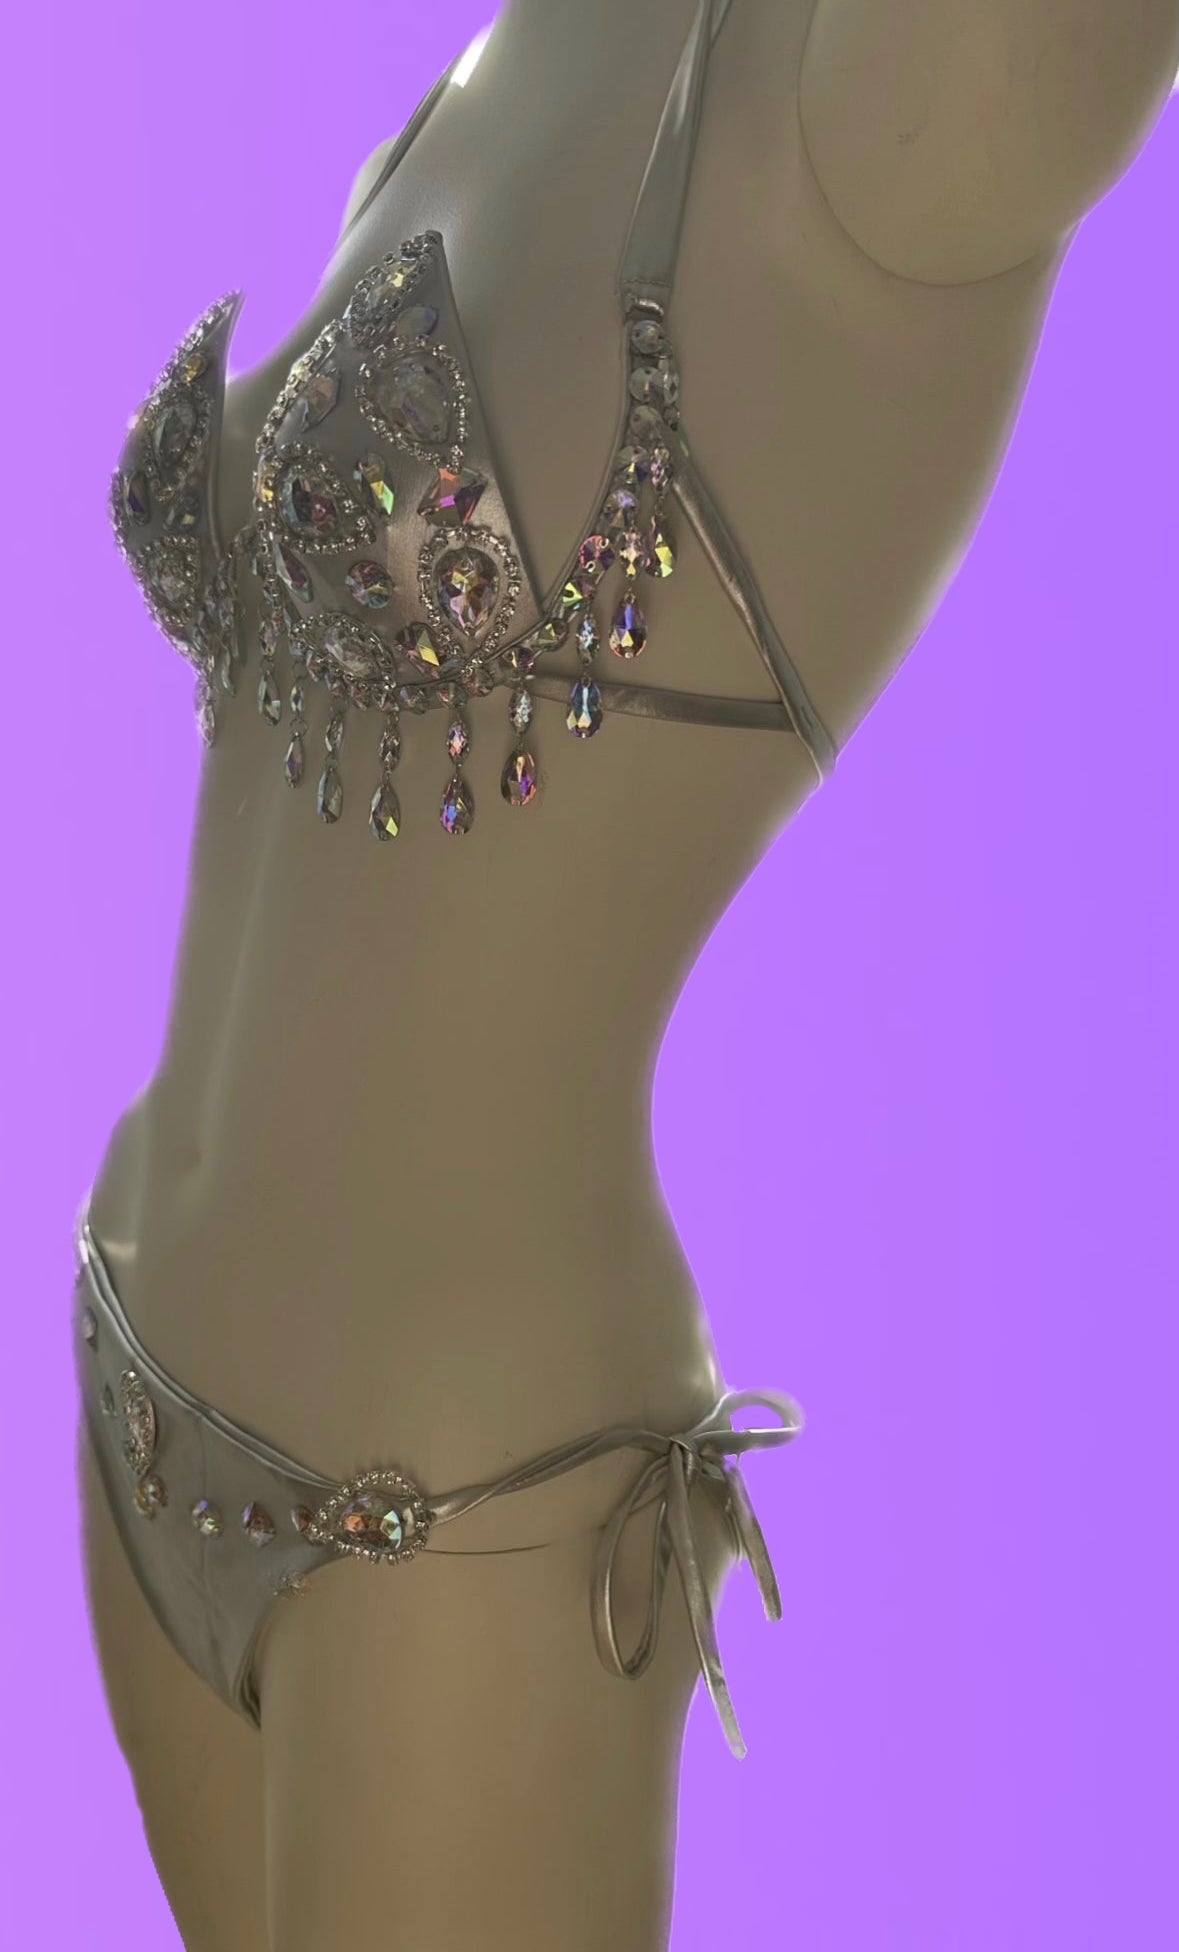 Nebula rave bikini – Erotica